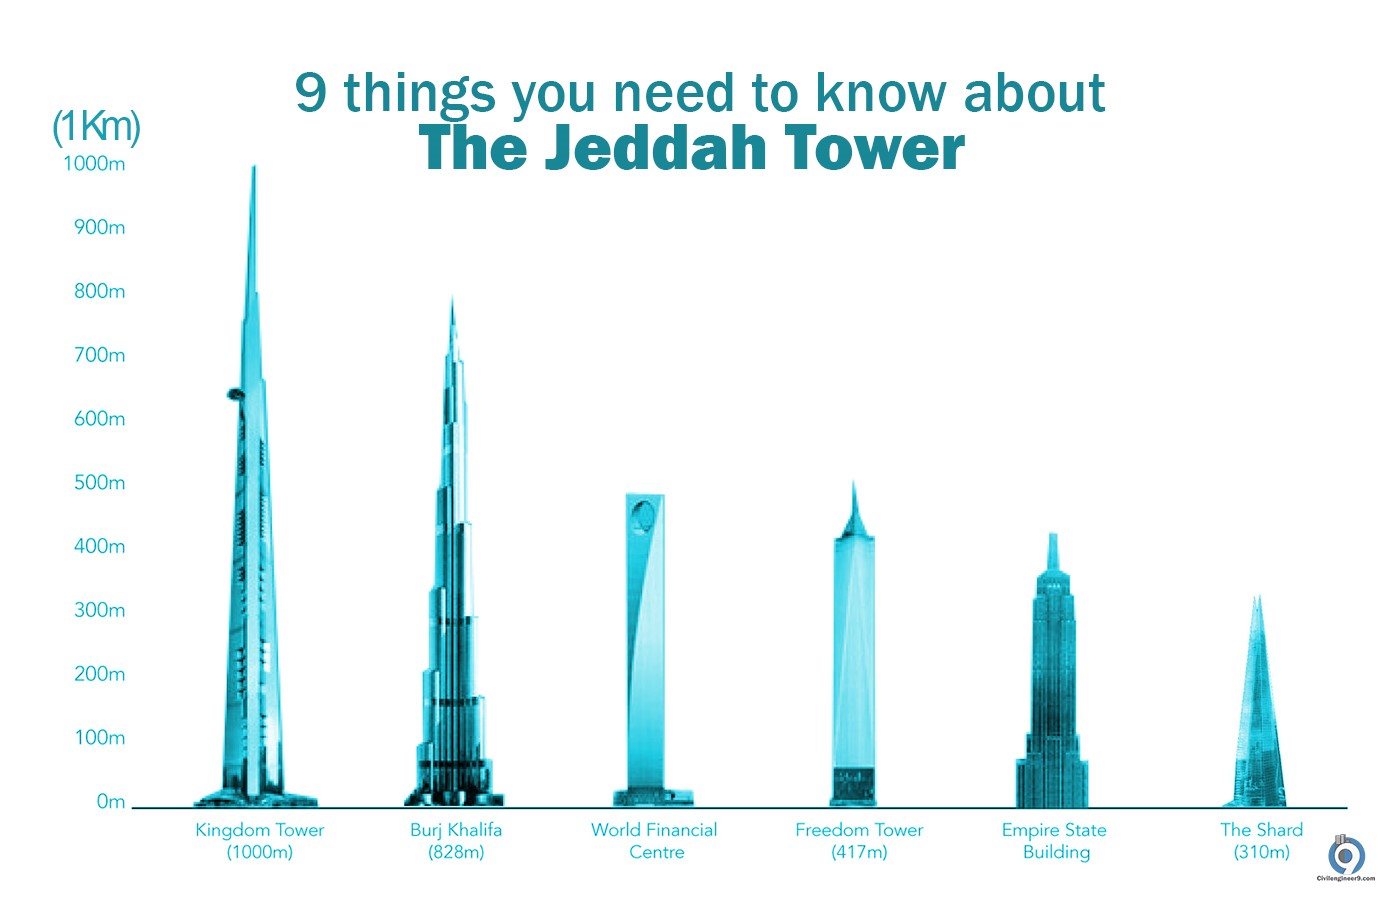 Tower jeddah Jeddah Tower: